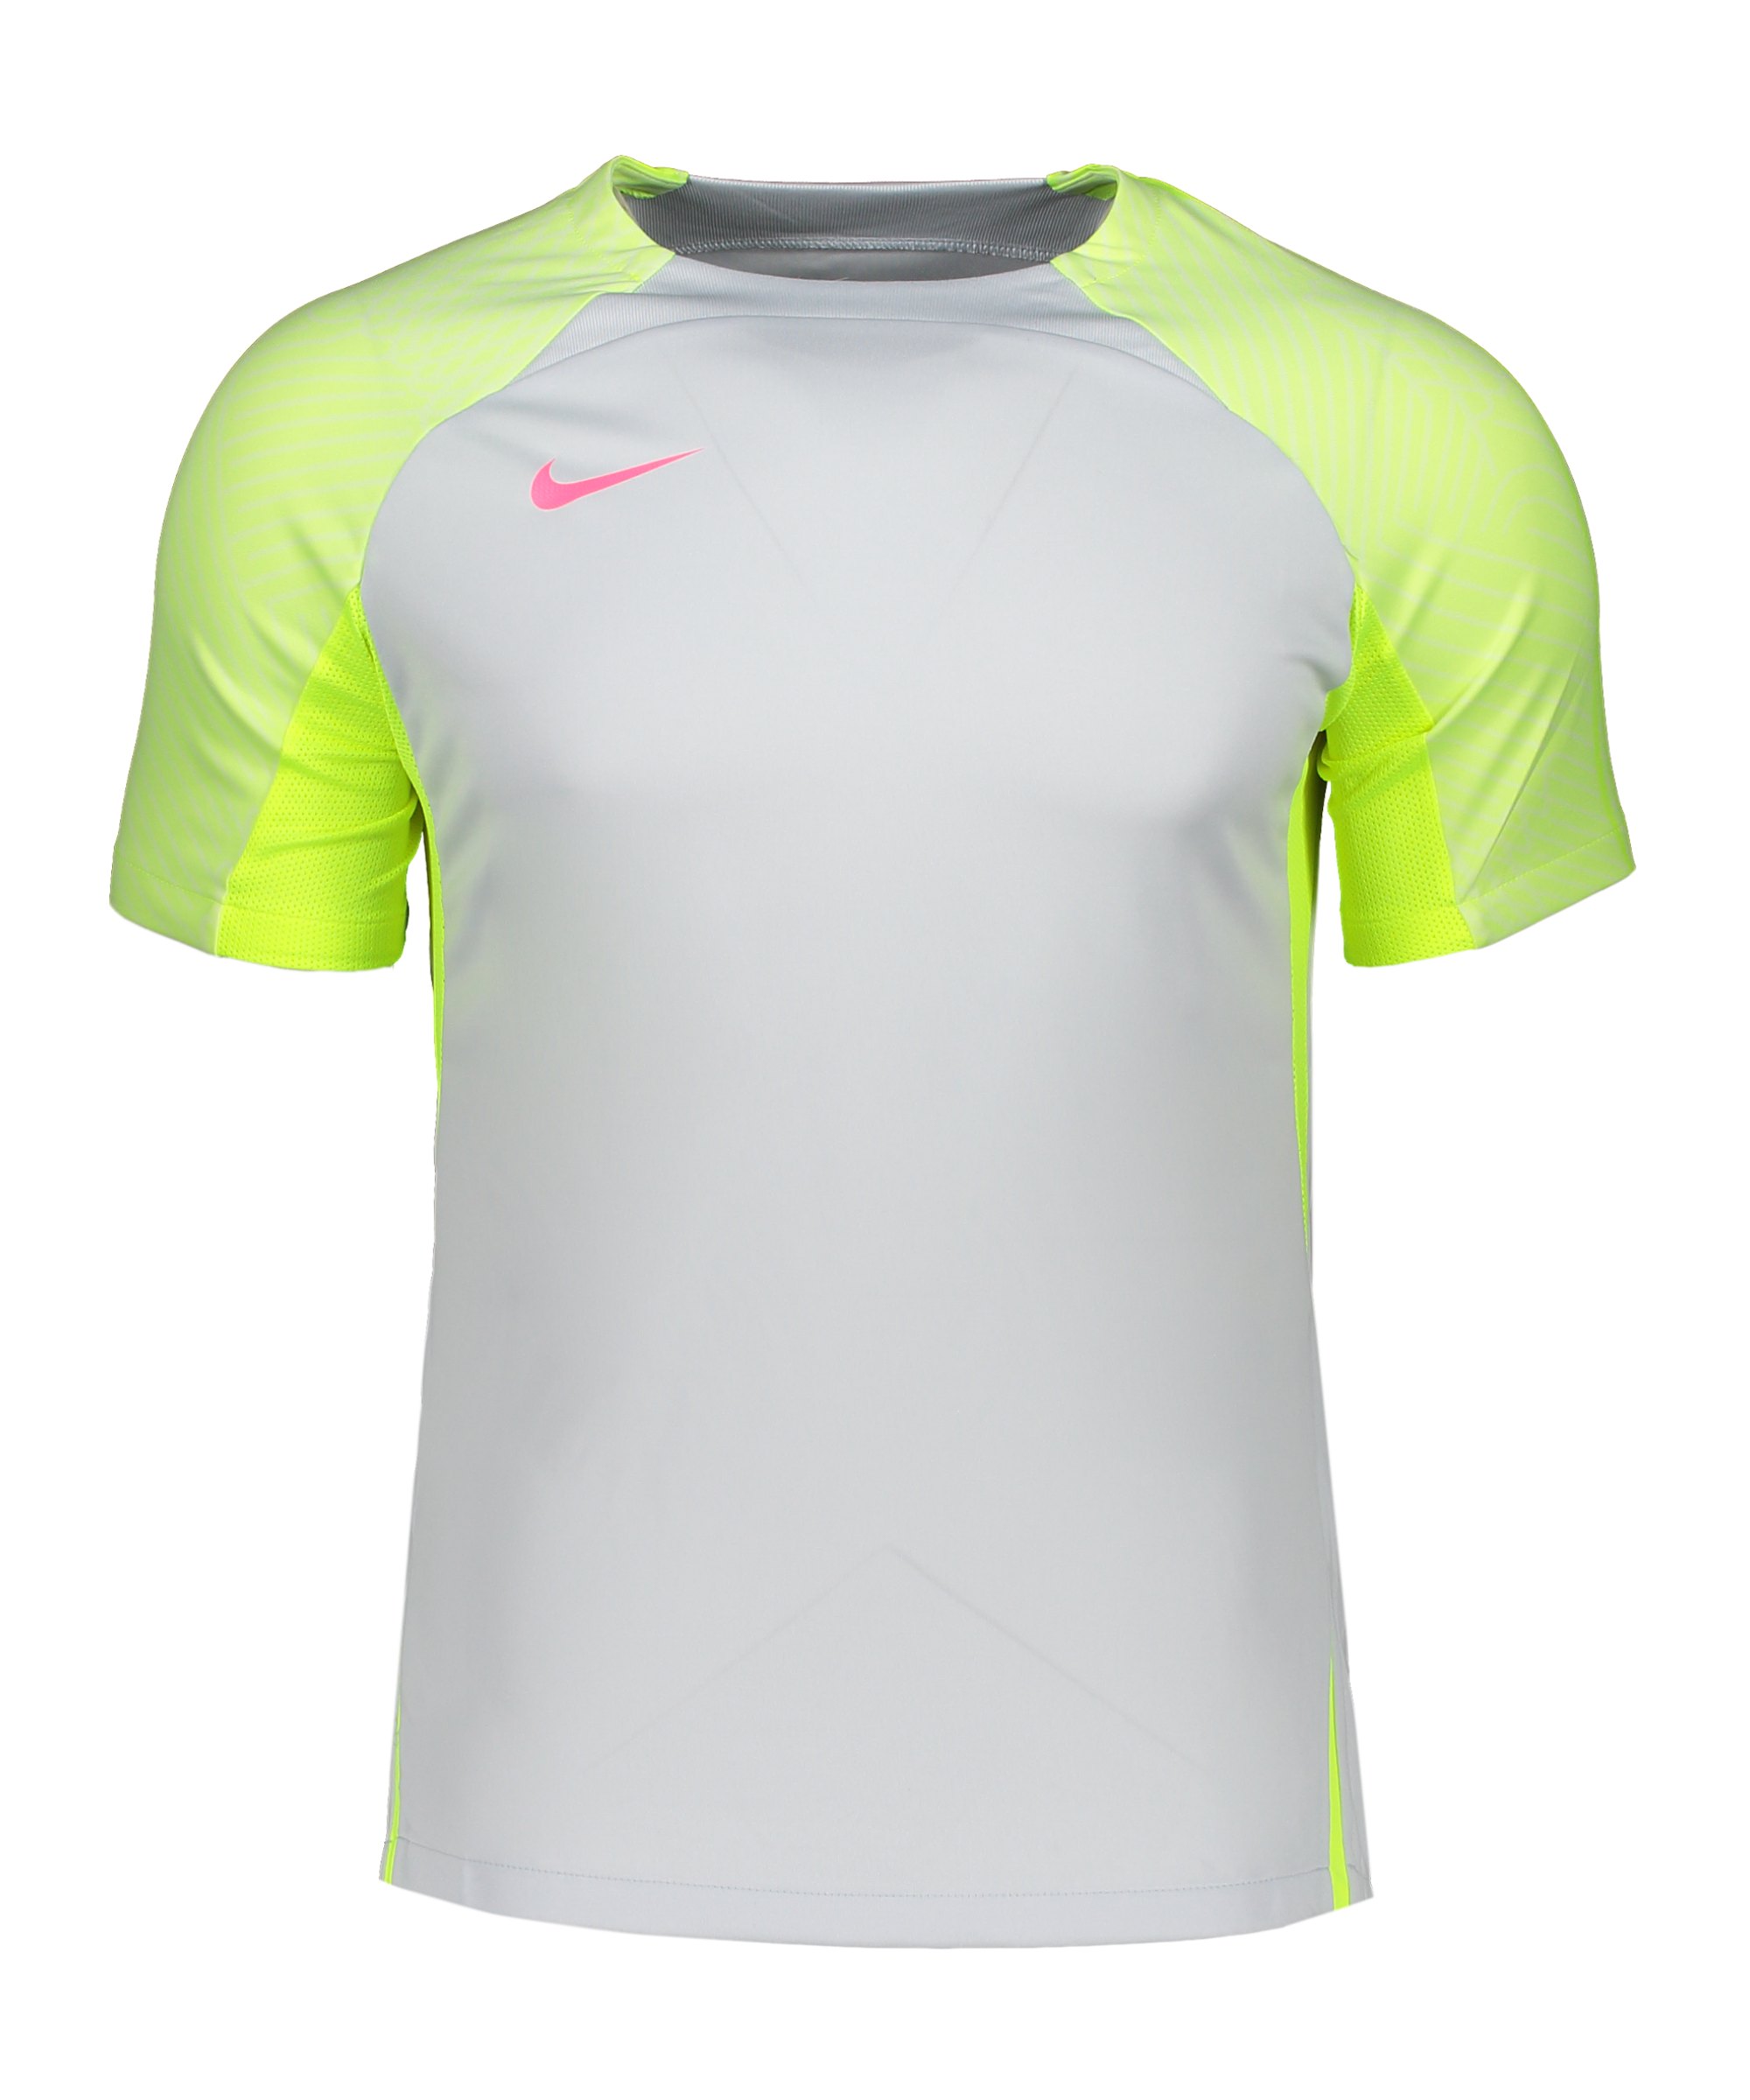 Nike Strike Trainingsshirt Weiss Gelb Pink F043 - weiss